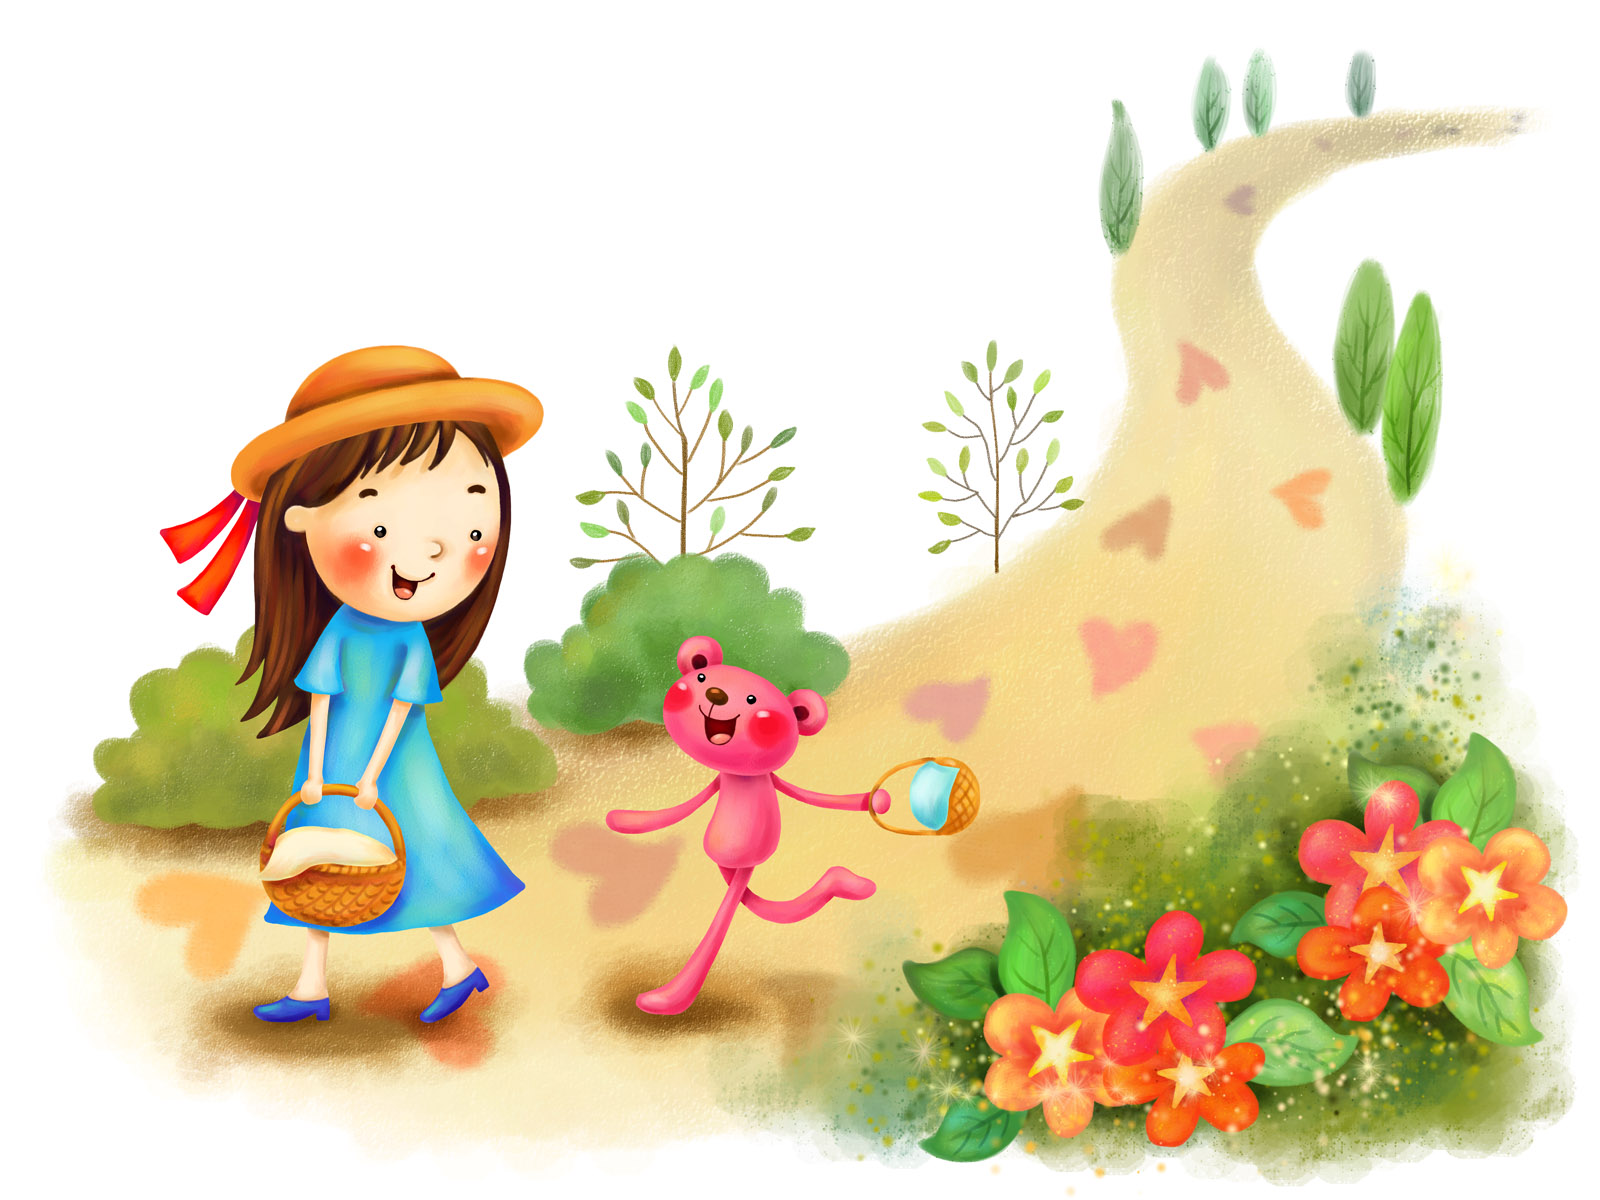 Download Cute Cartoon South Korea Wallpaper 1600x1200 | Wallpoper ...